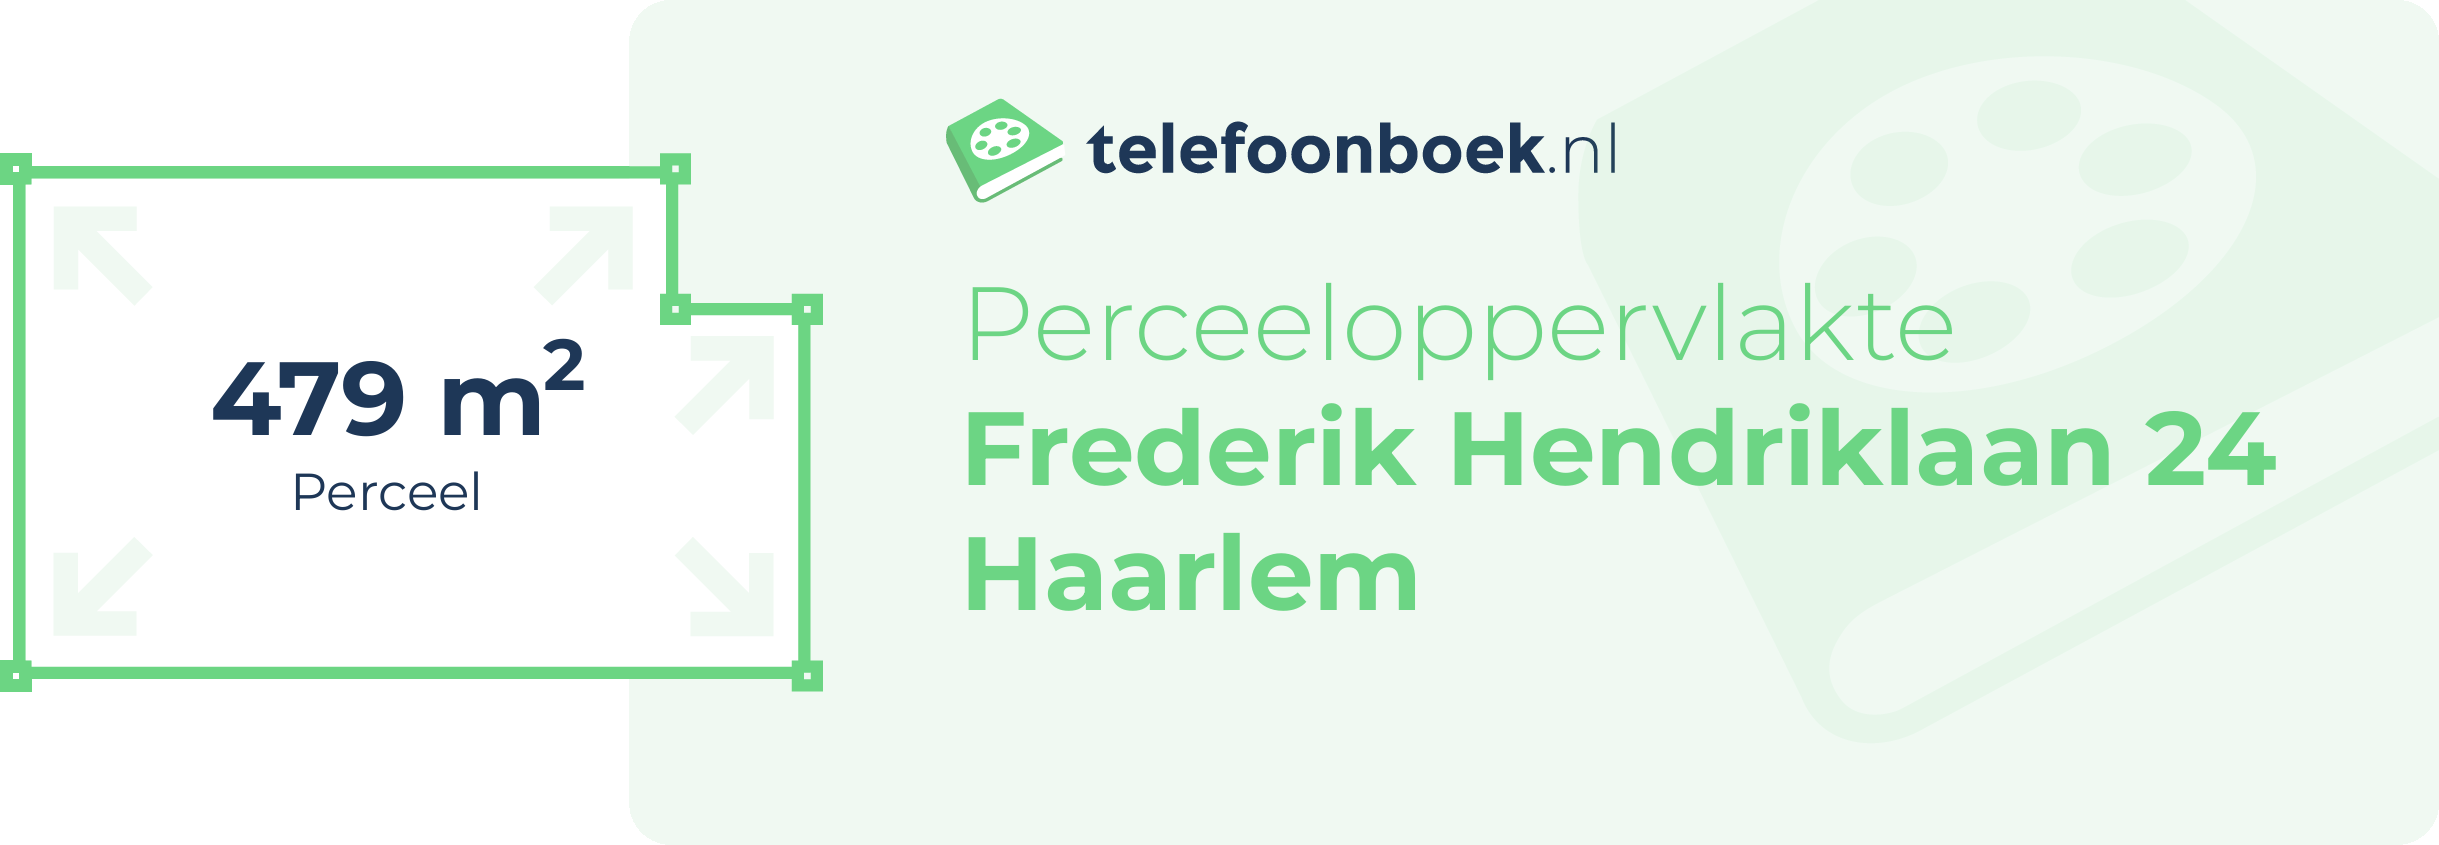 Perceeloppervlakte Frederik Hendriklaan 24 Haarlem